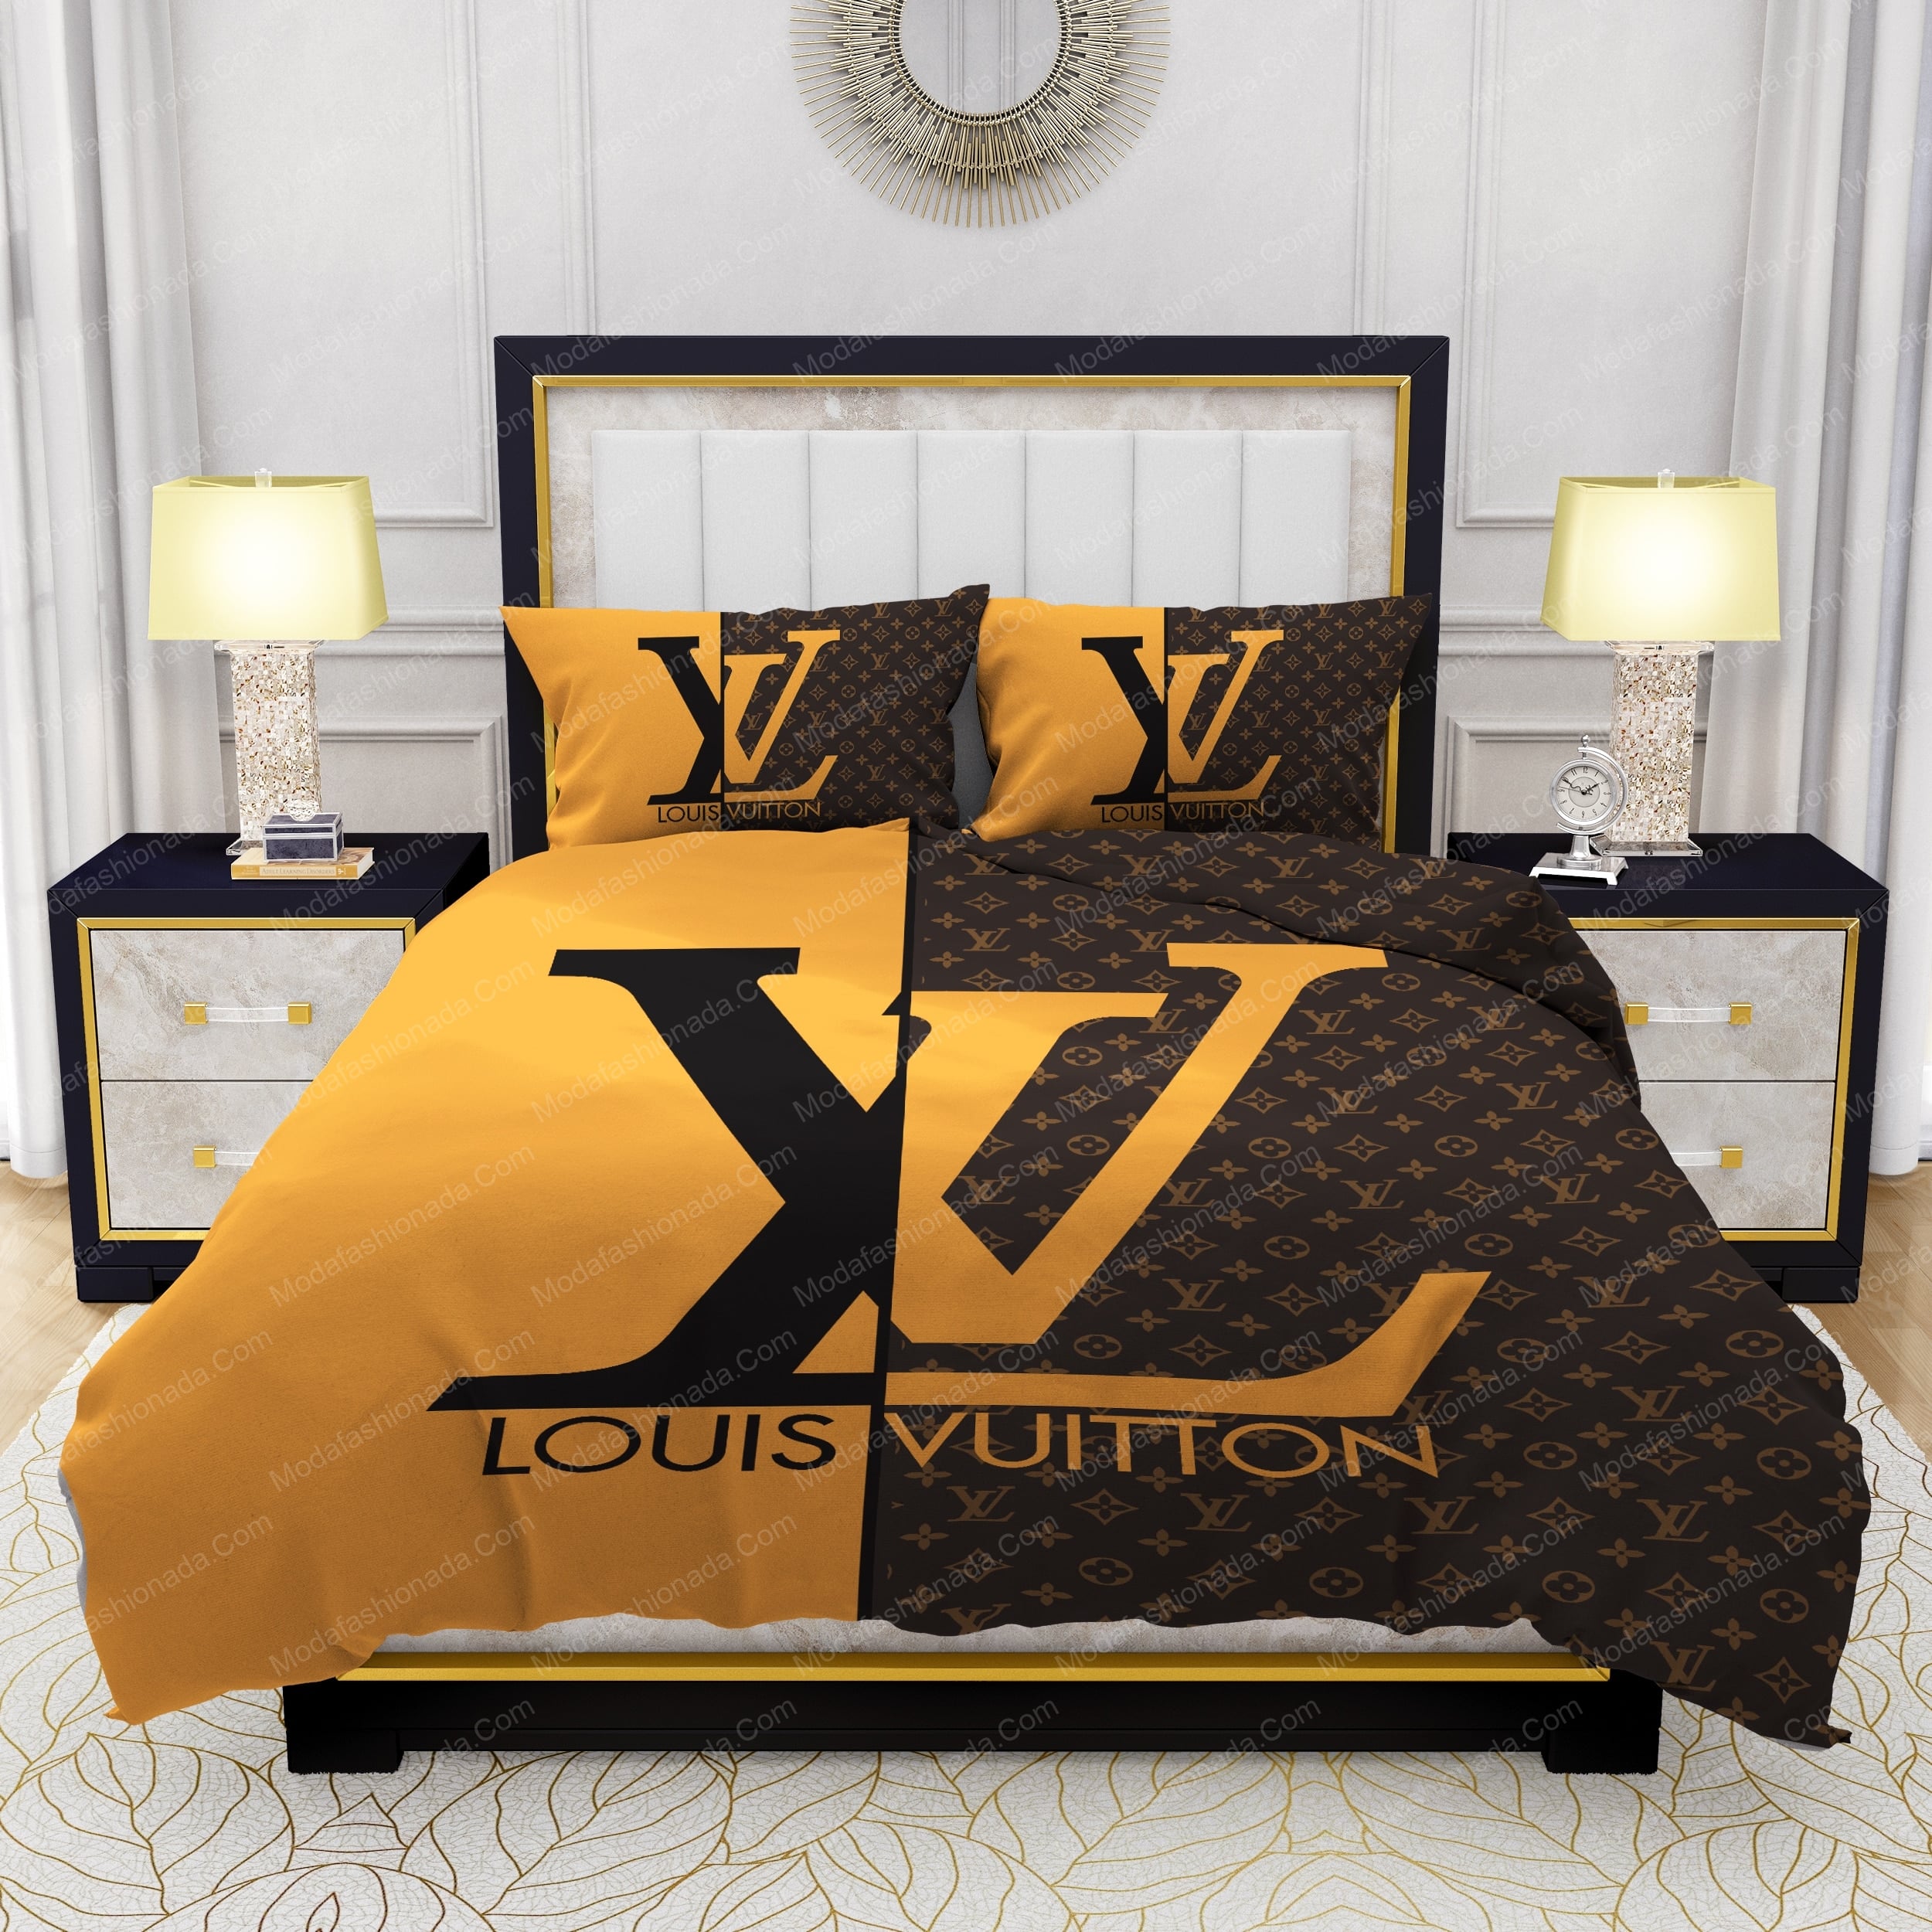 Louis vuitton bedding sets 27 luxury brand bedding set duvet cover bdslux